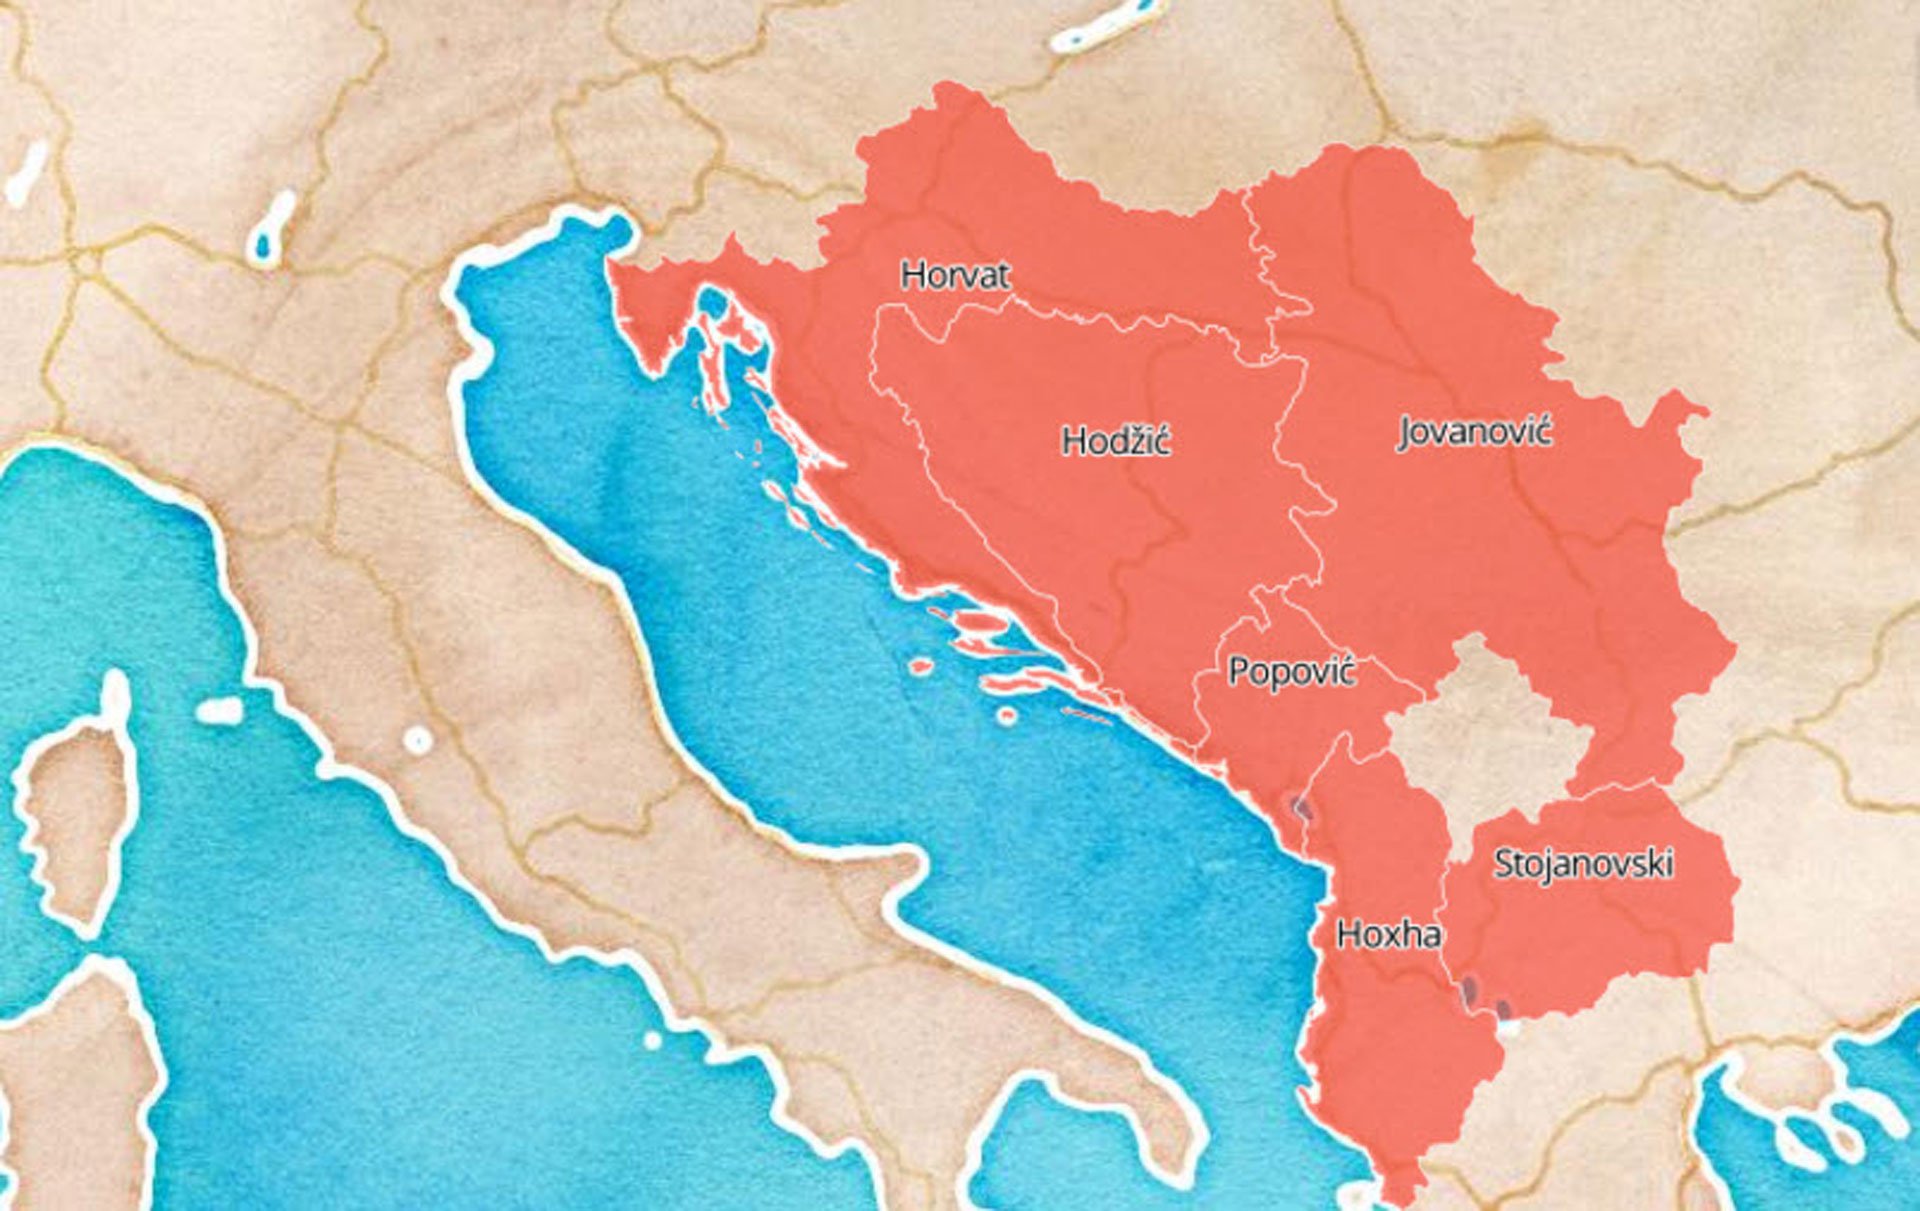 Mapa najpopularnijih prezimena u regiji